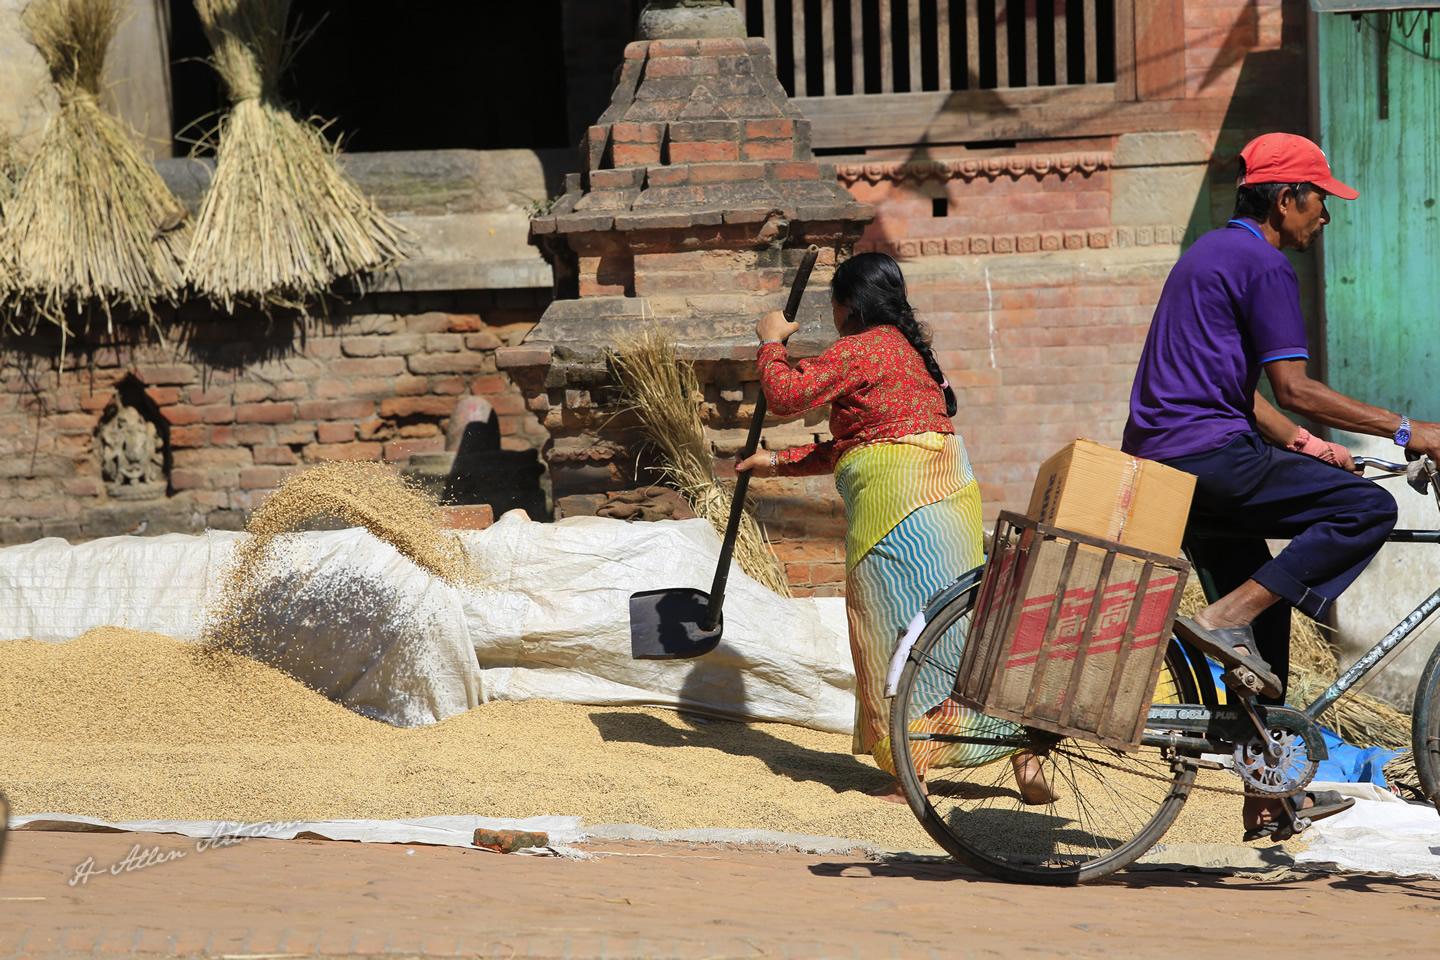 Aeration Rice Drying Process, Kathmandu, Nepal